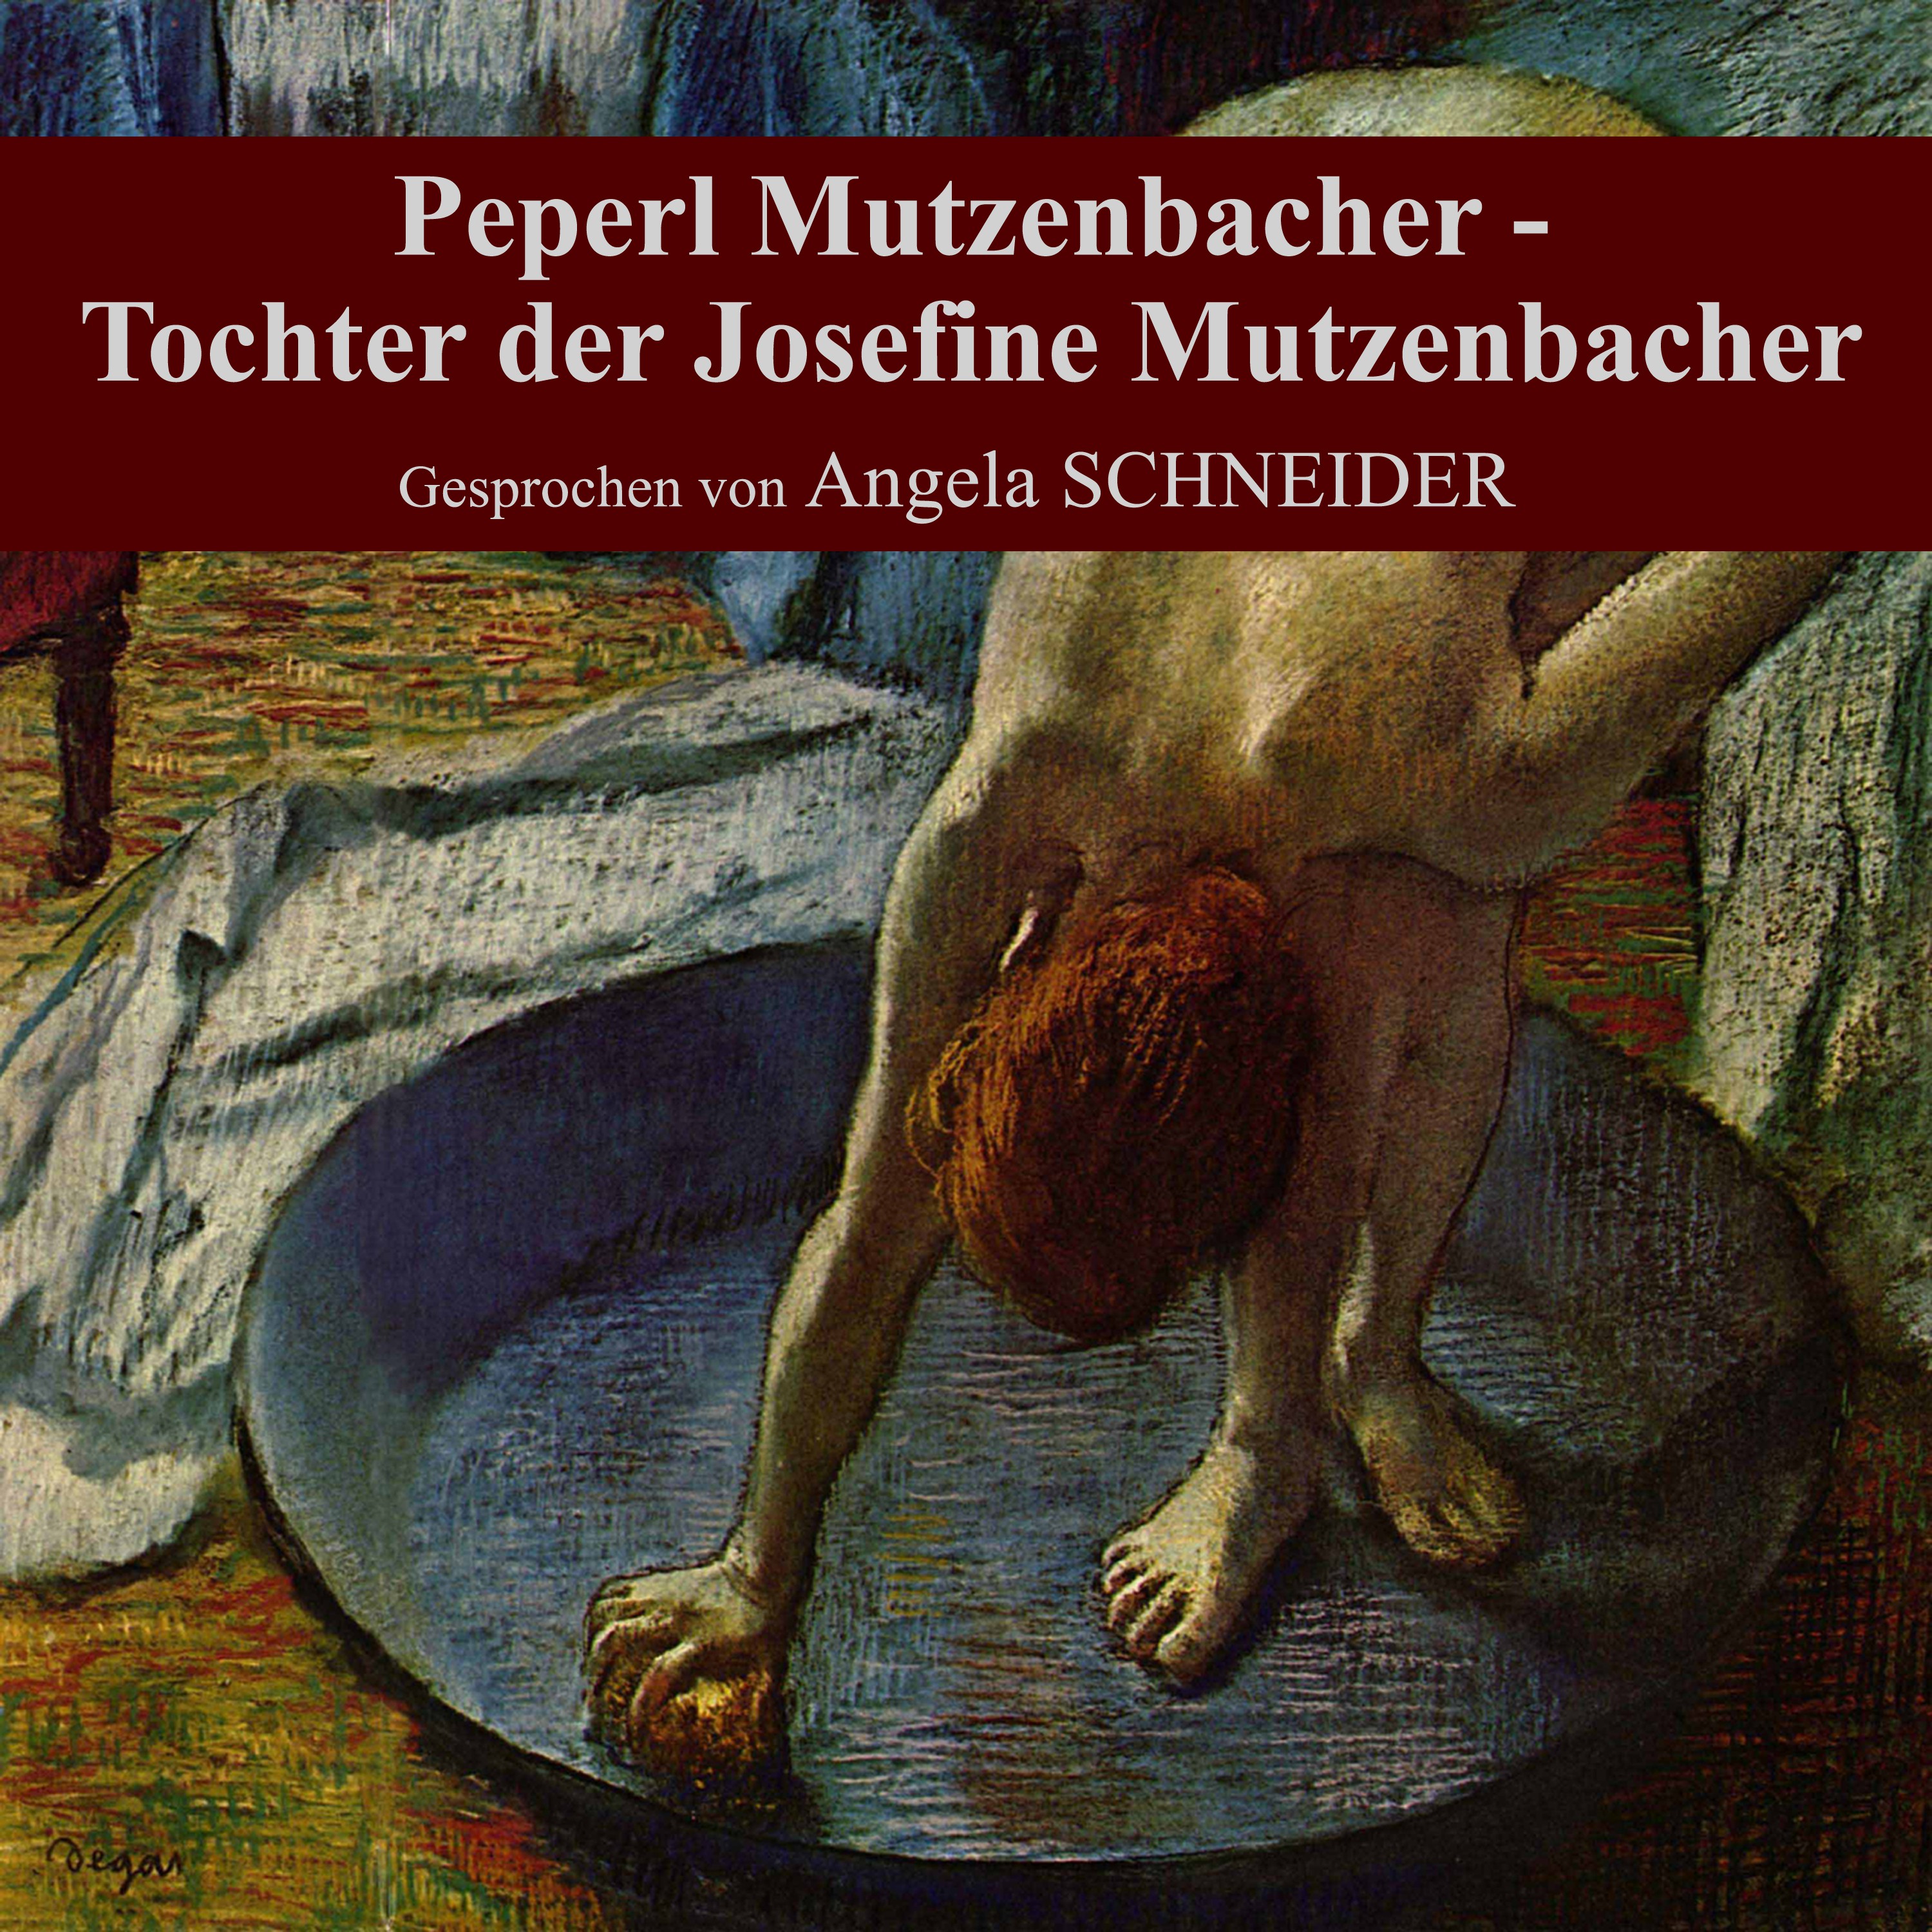 Teil 159: Peperl Mutzenbacher - Tochter der Josefine Mutzenbacher